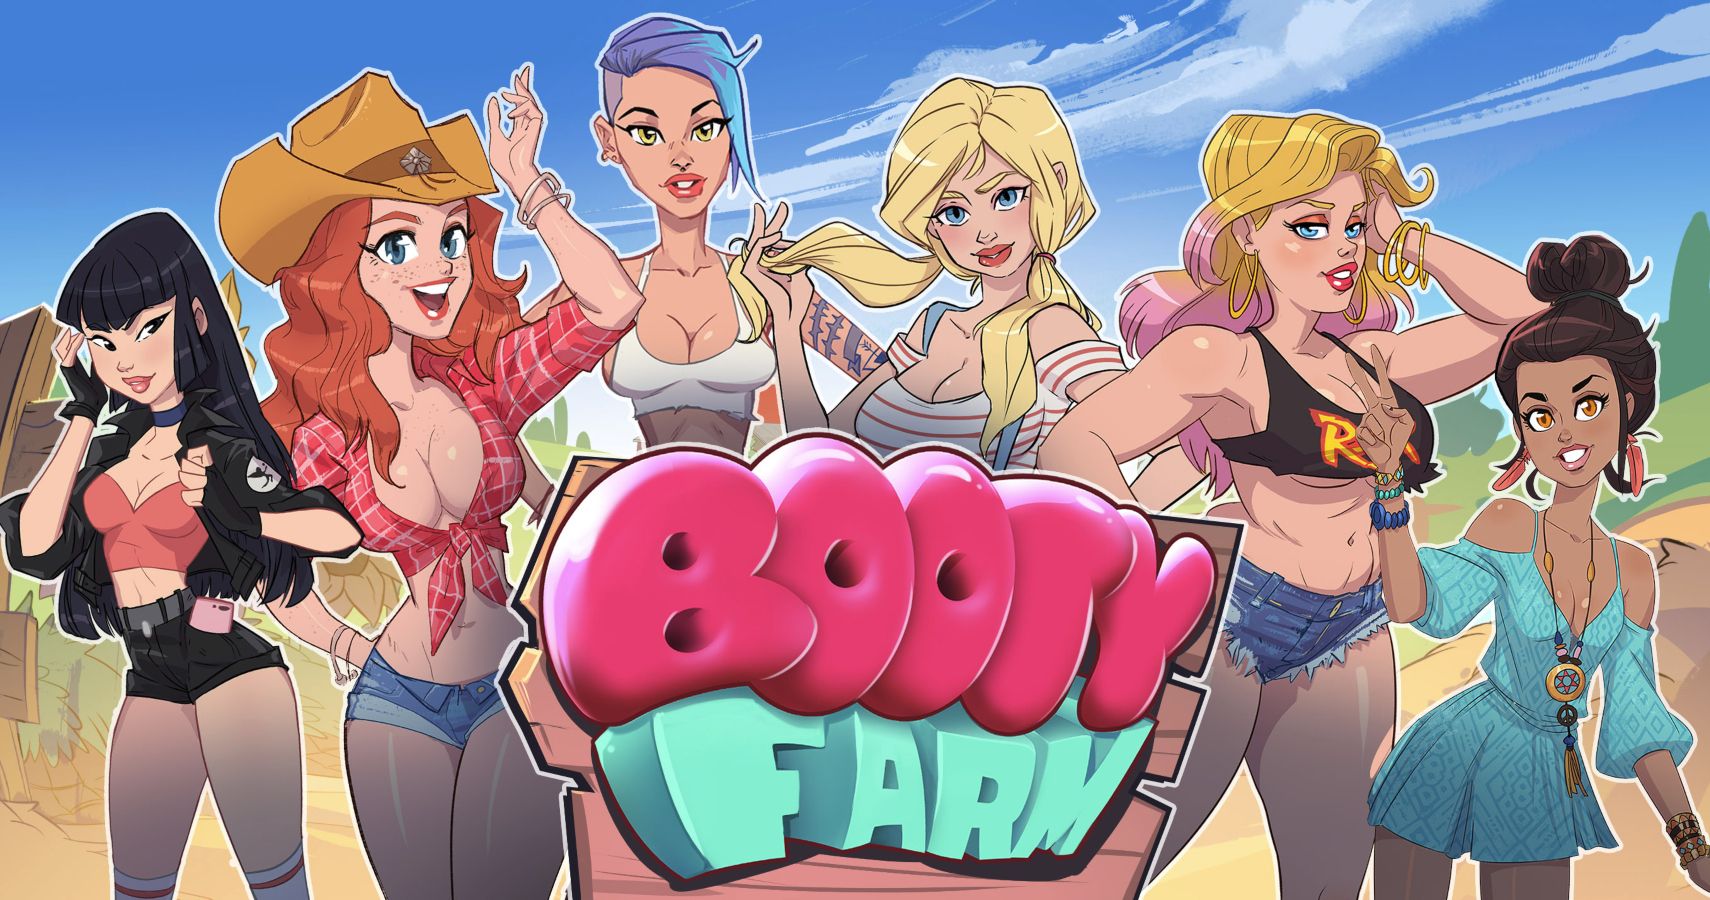 Booty farm animated